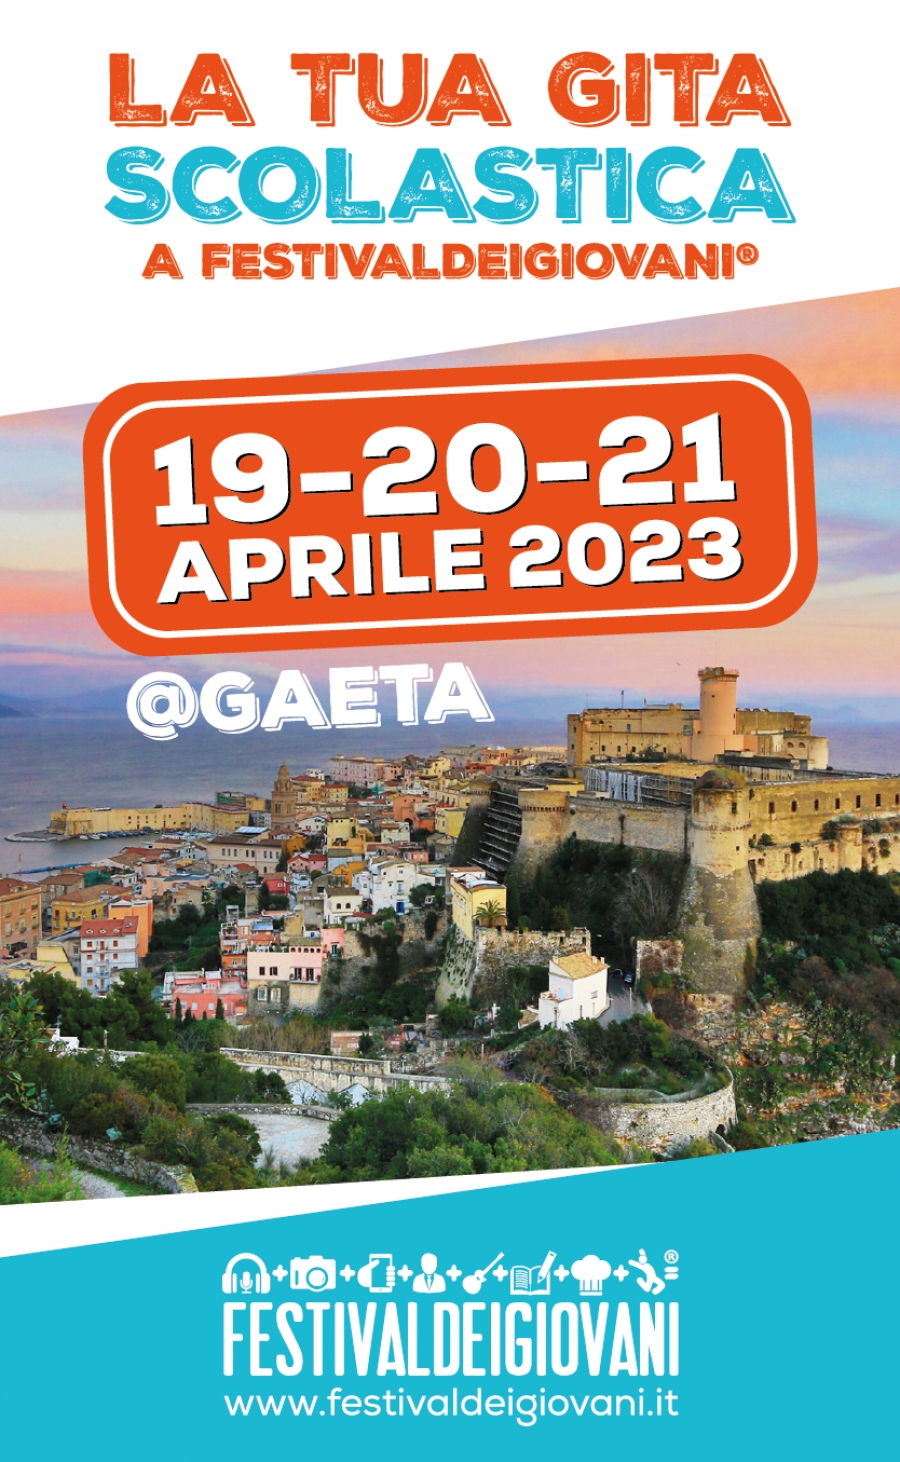 Festivaldeigiovani® @Gaeta (19-20-21 aprile 2023) PUBBLICITA PRE EVENTO